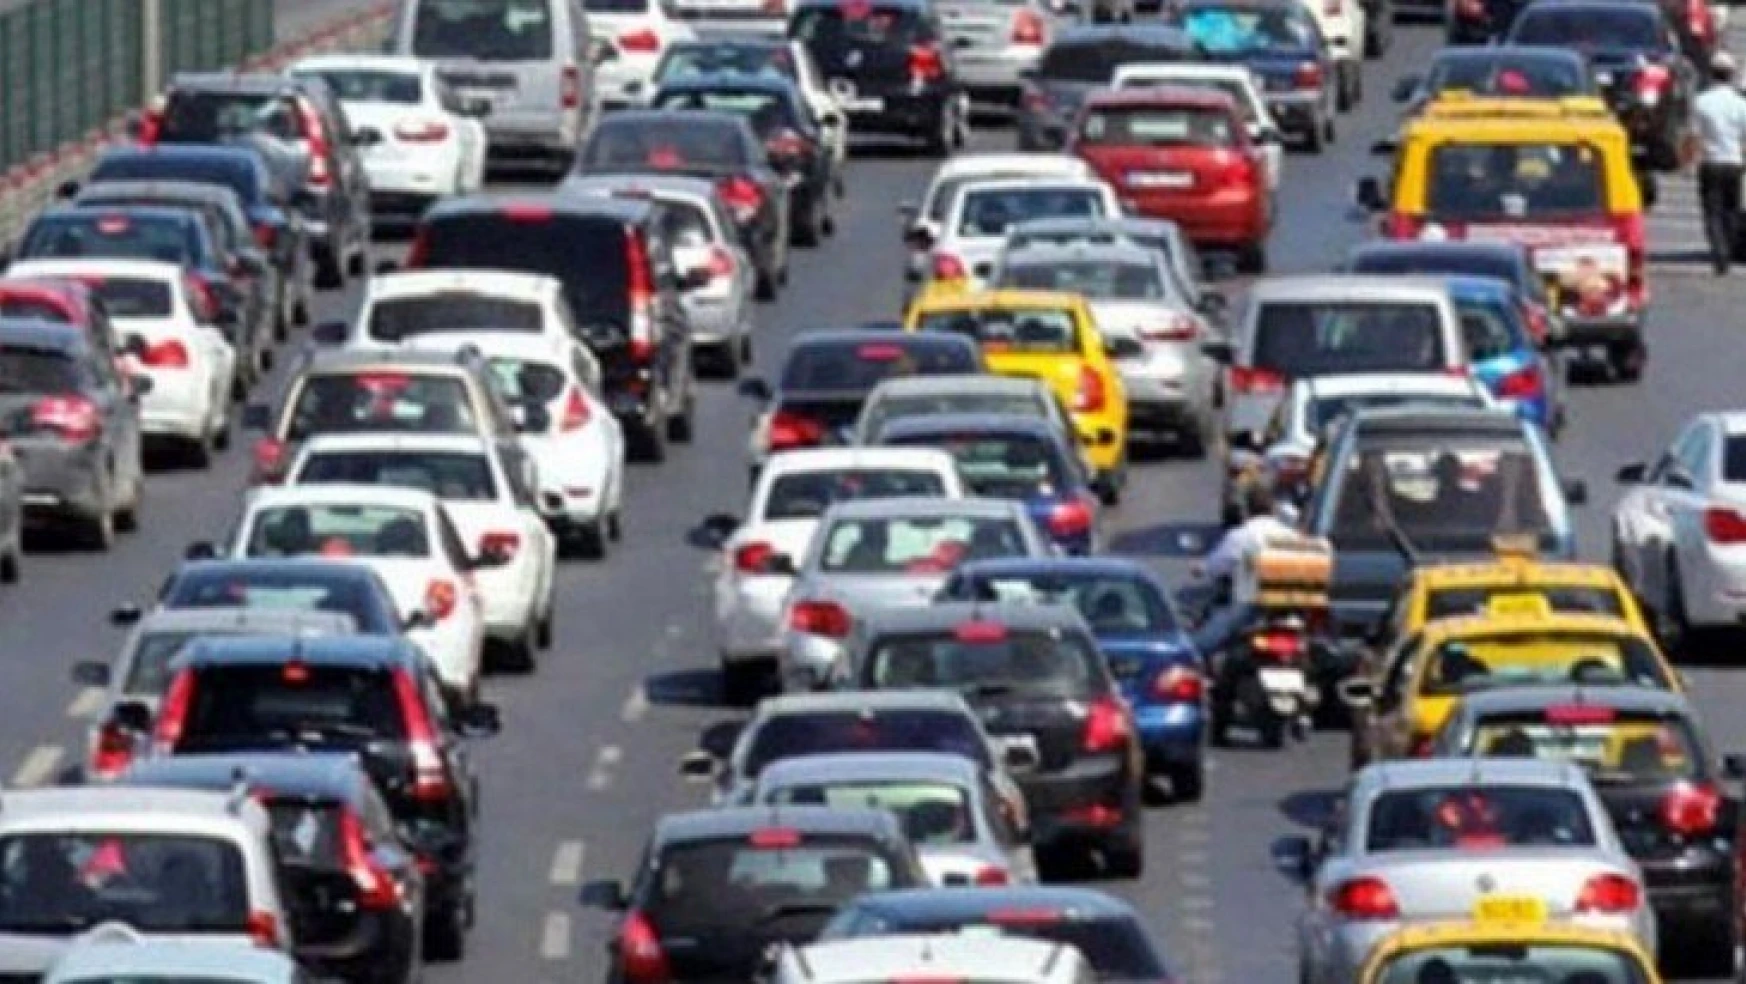 Malatya'da trafiğe kayıtlı araç sayısı Haziran ayı sonu itibarıyla 180 659 oldu.